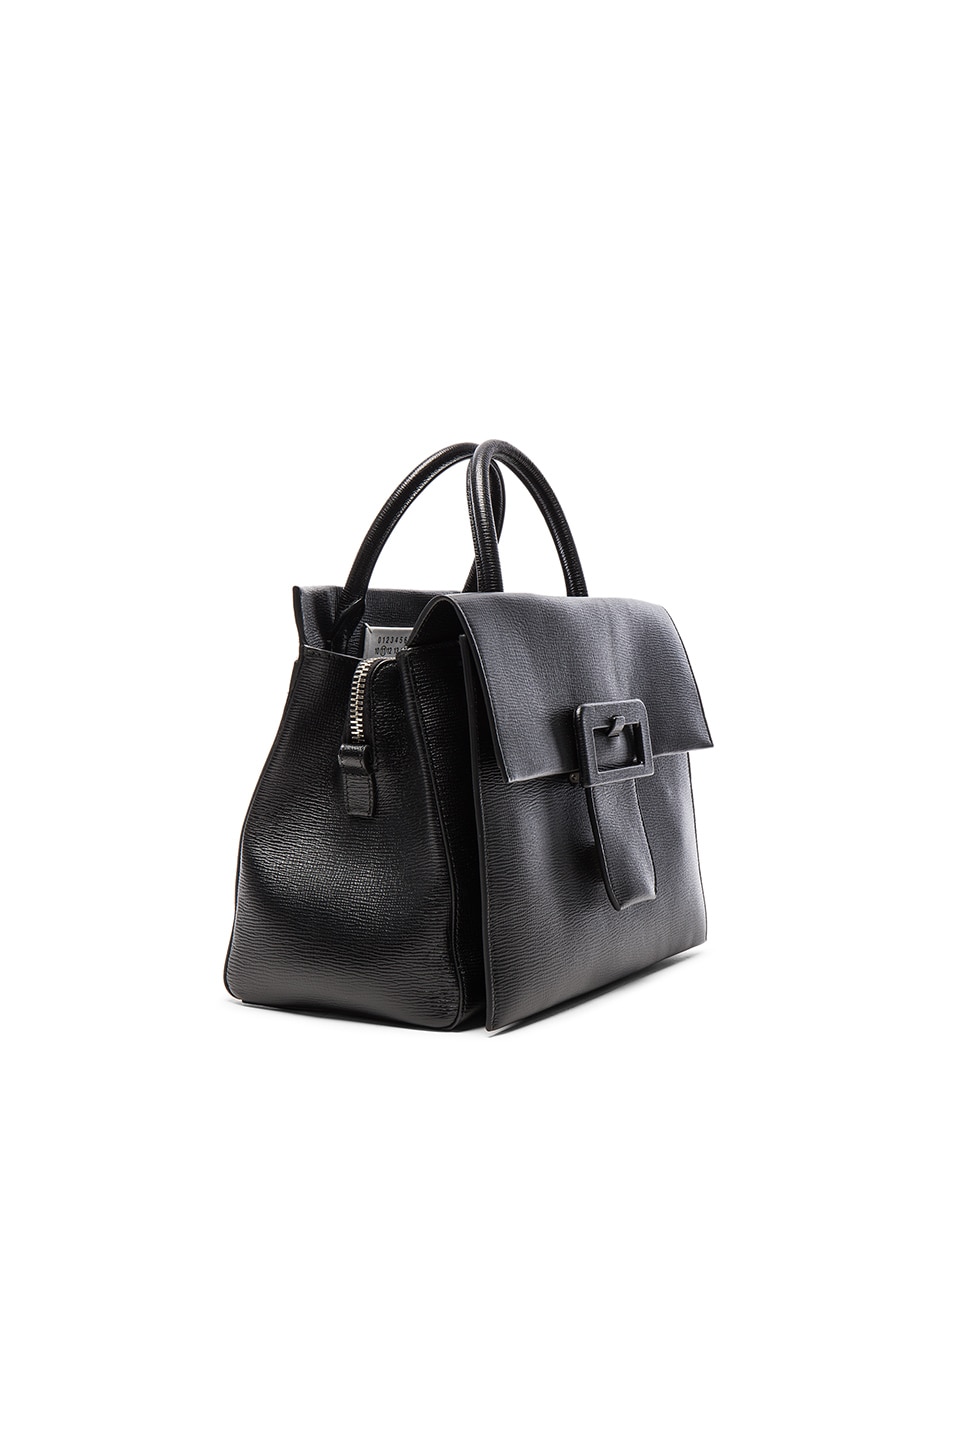 Maison Margiela Buckle Bag in Black | FWRD